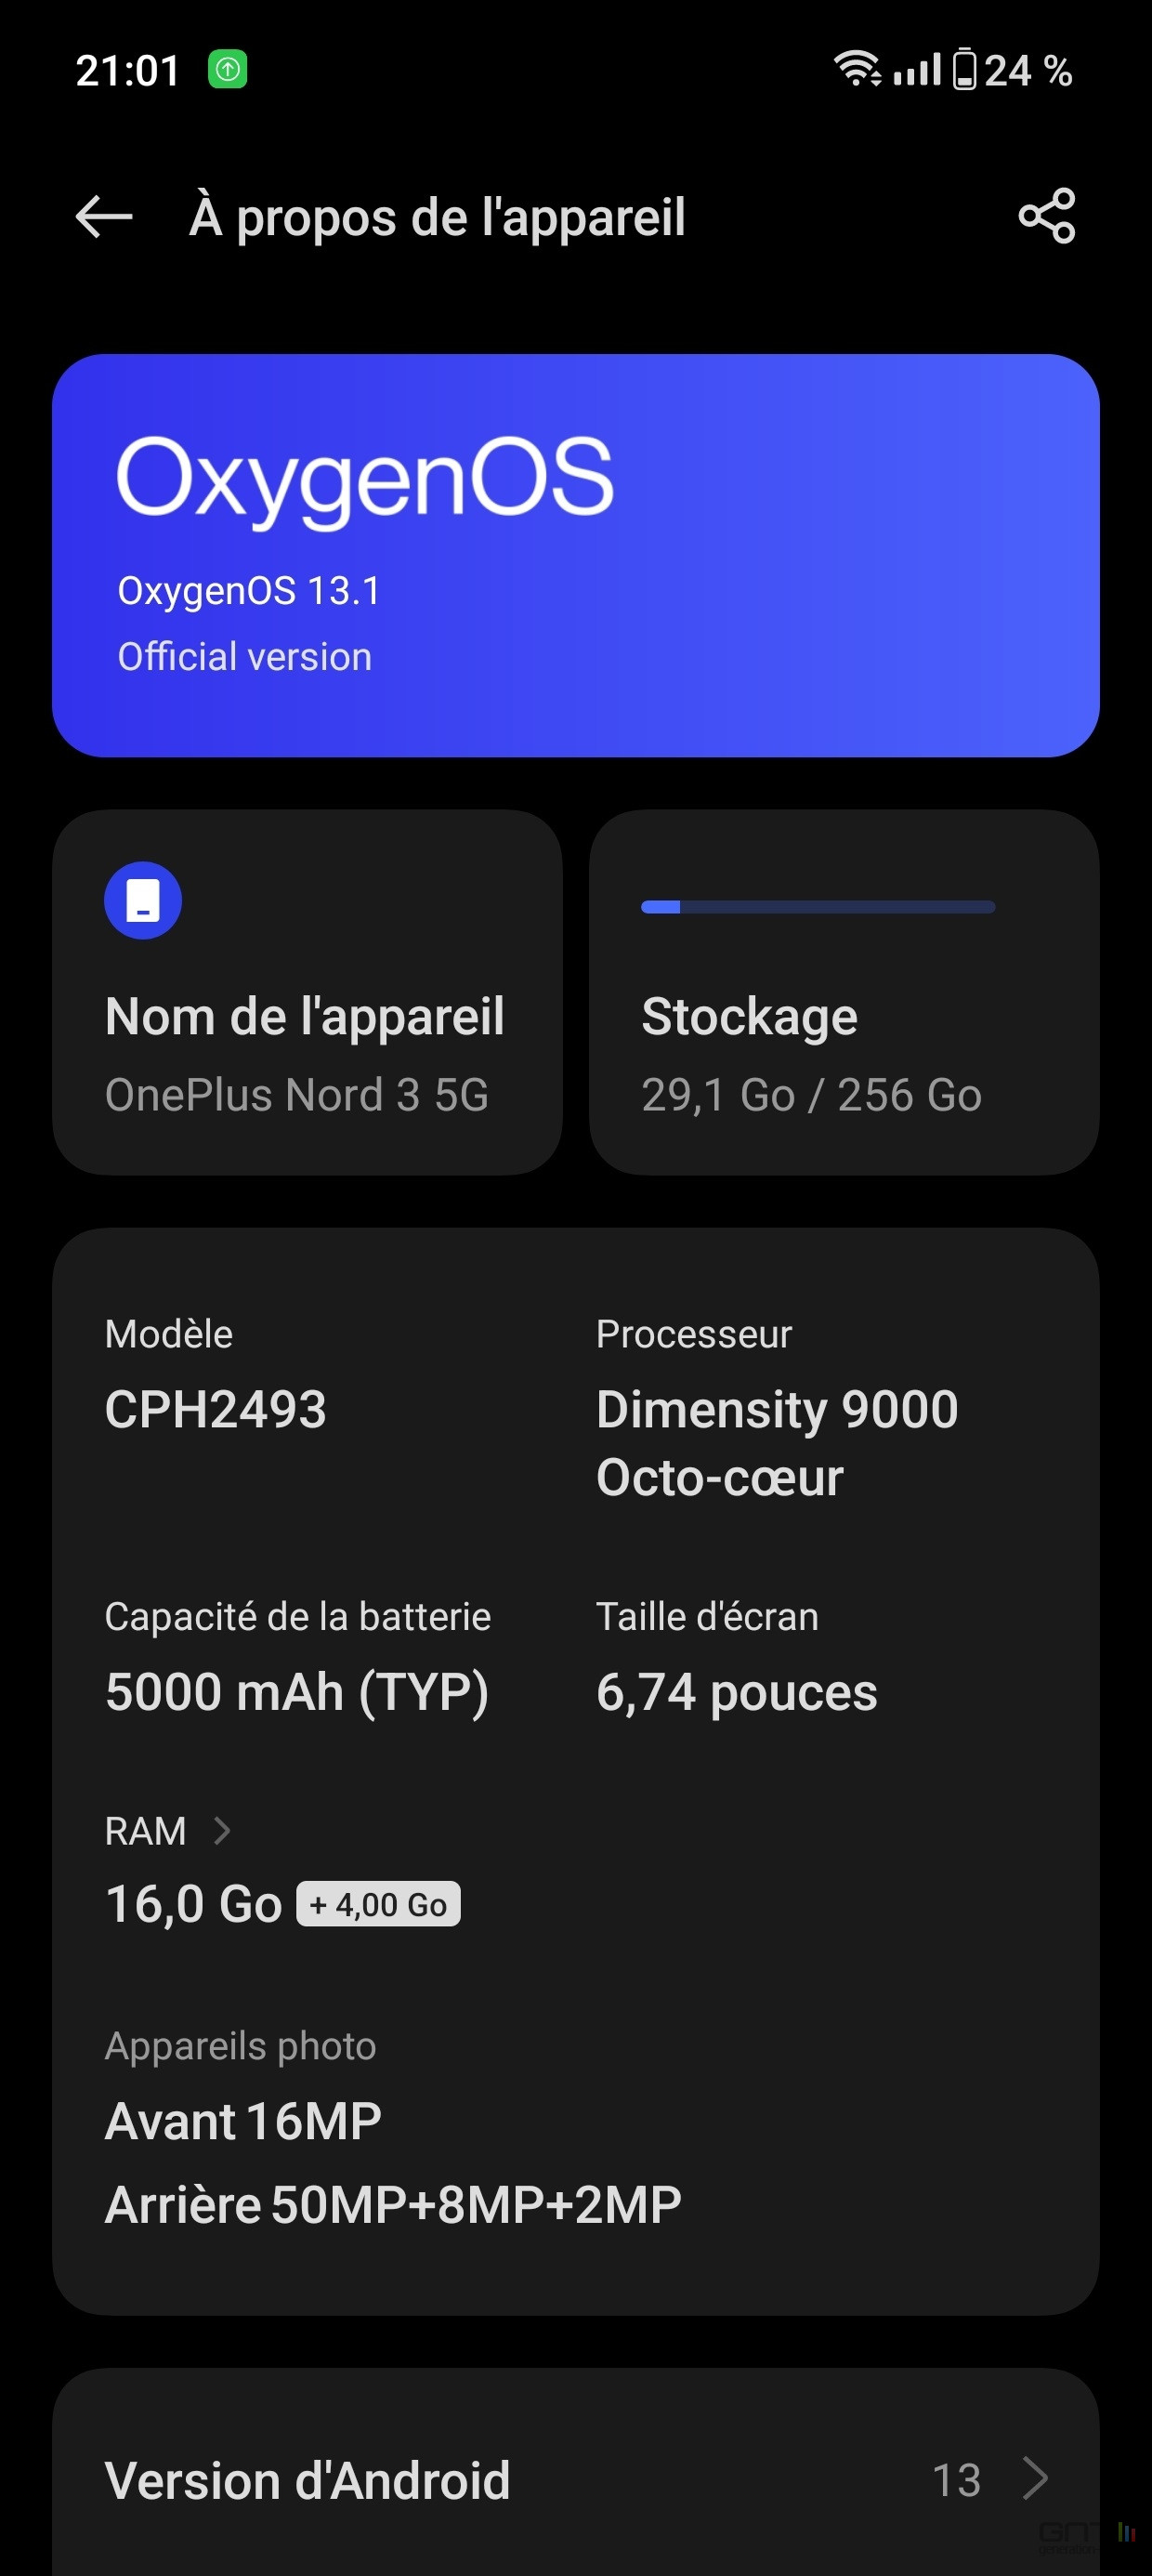 OnePlus Nord 3 specs